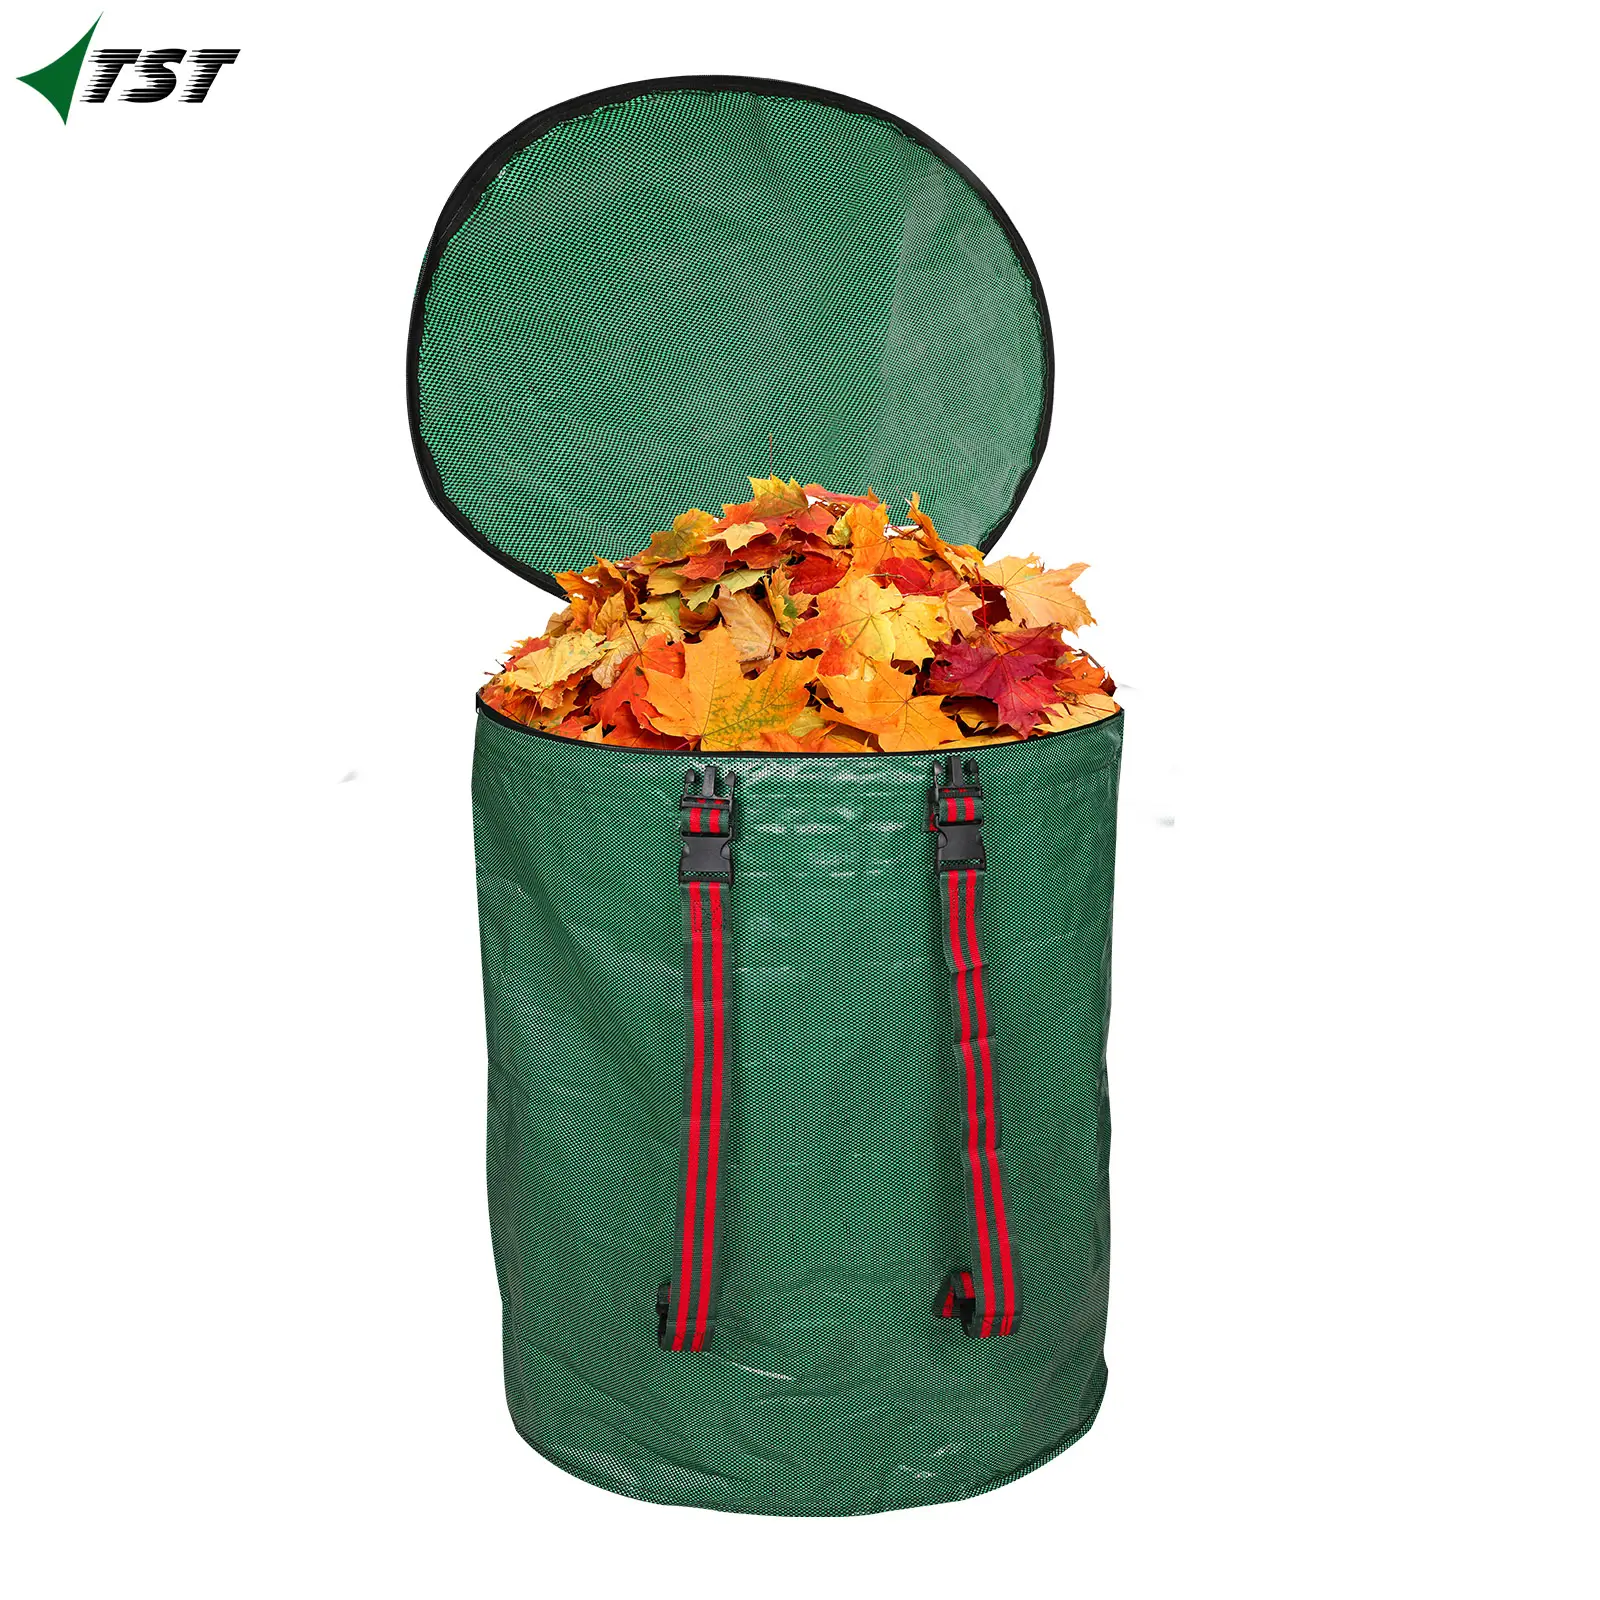 再利用可能な頑丈な非常に耐久性のある廃棄物芝生プールヤードリーフバッグ折りたたみ式ガーデン廃棄物バッグ